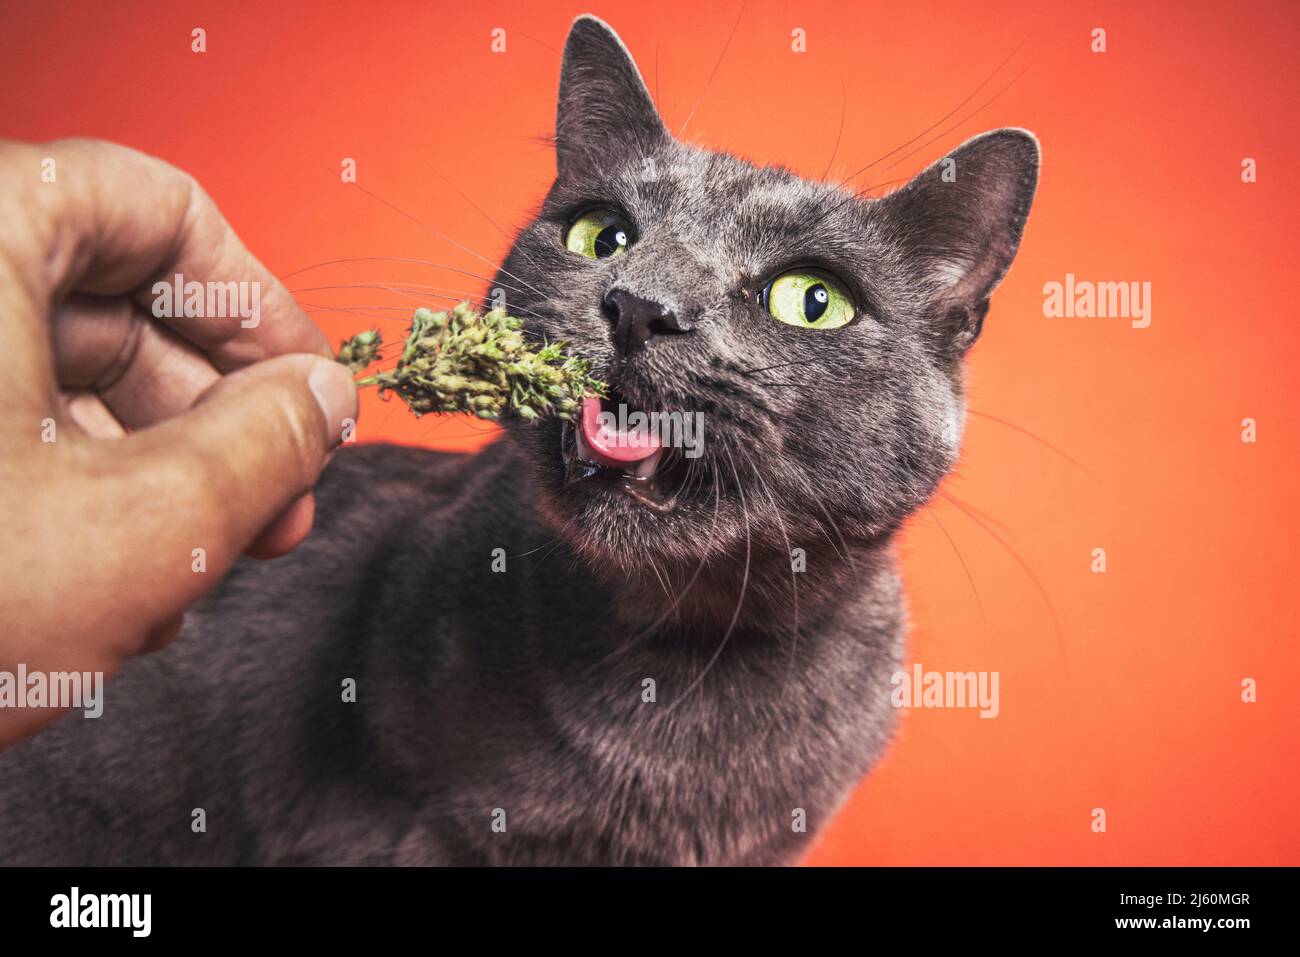 Gato doméstico gris comiendo ansiosamente el catnip de la mano de una persona mientras que mira la cámara fotográfica. Foto de stock